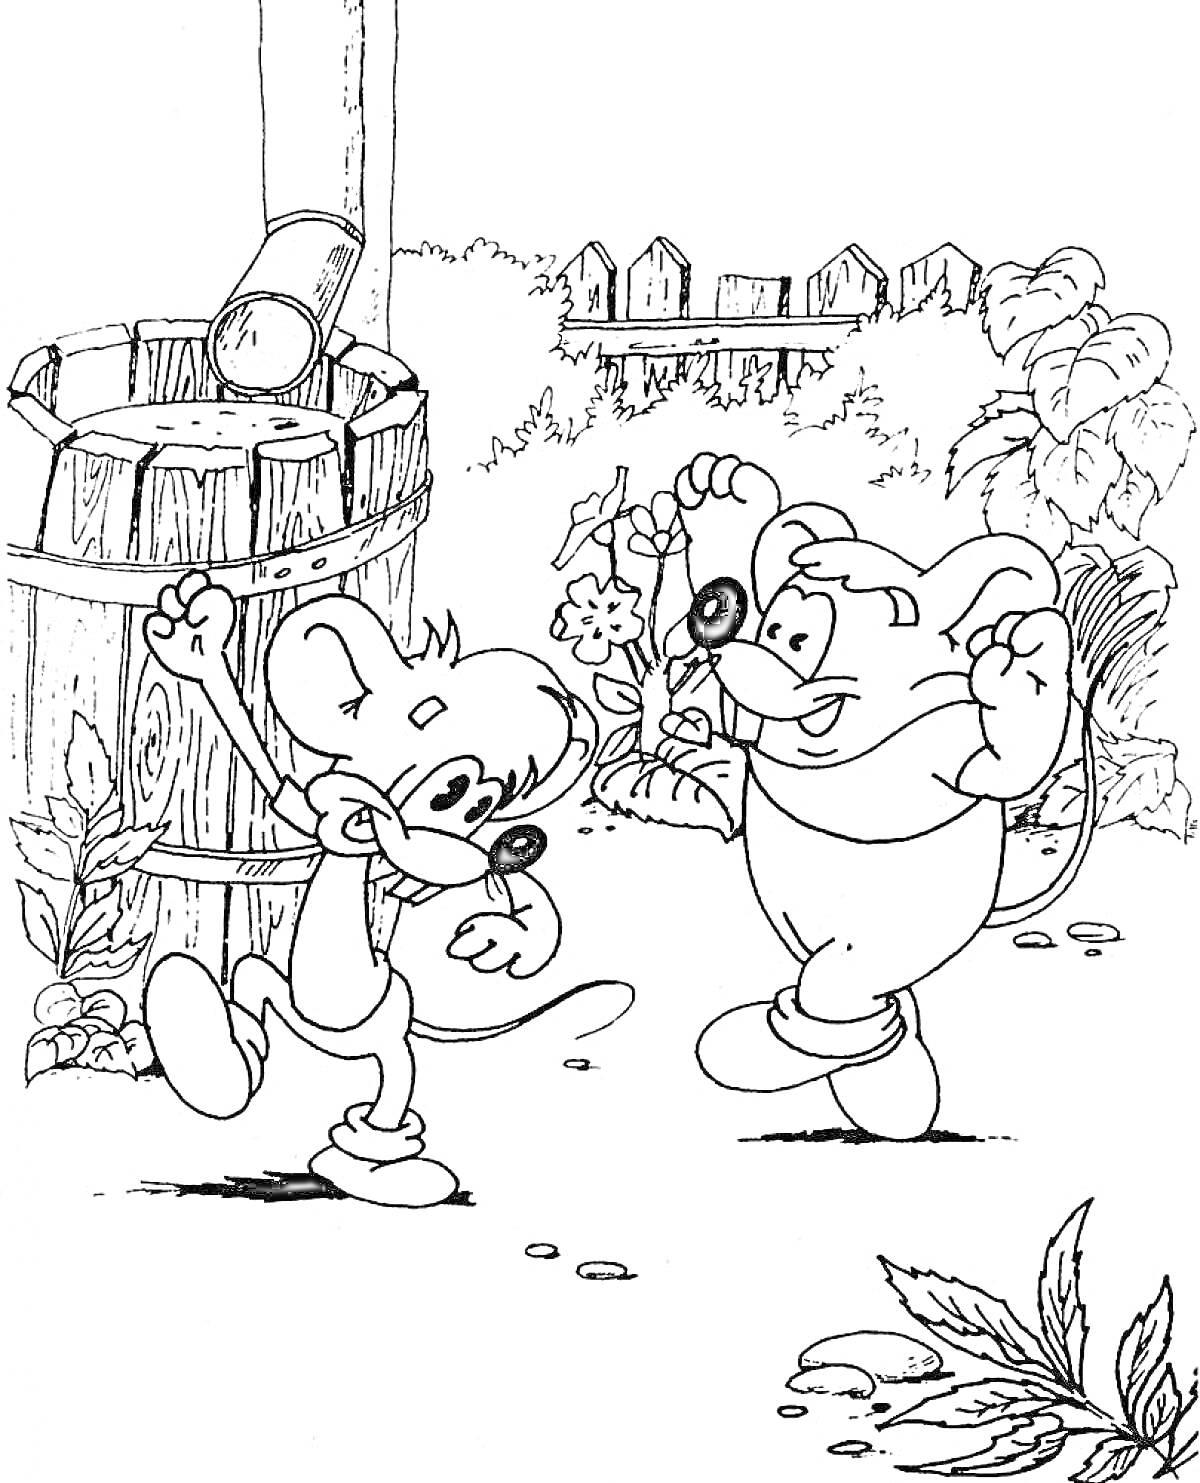 Раскраска Кот Леопольд у колодца с мышами, цветами и забором на фоне